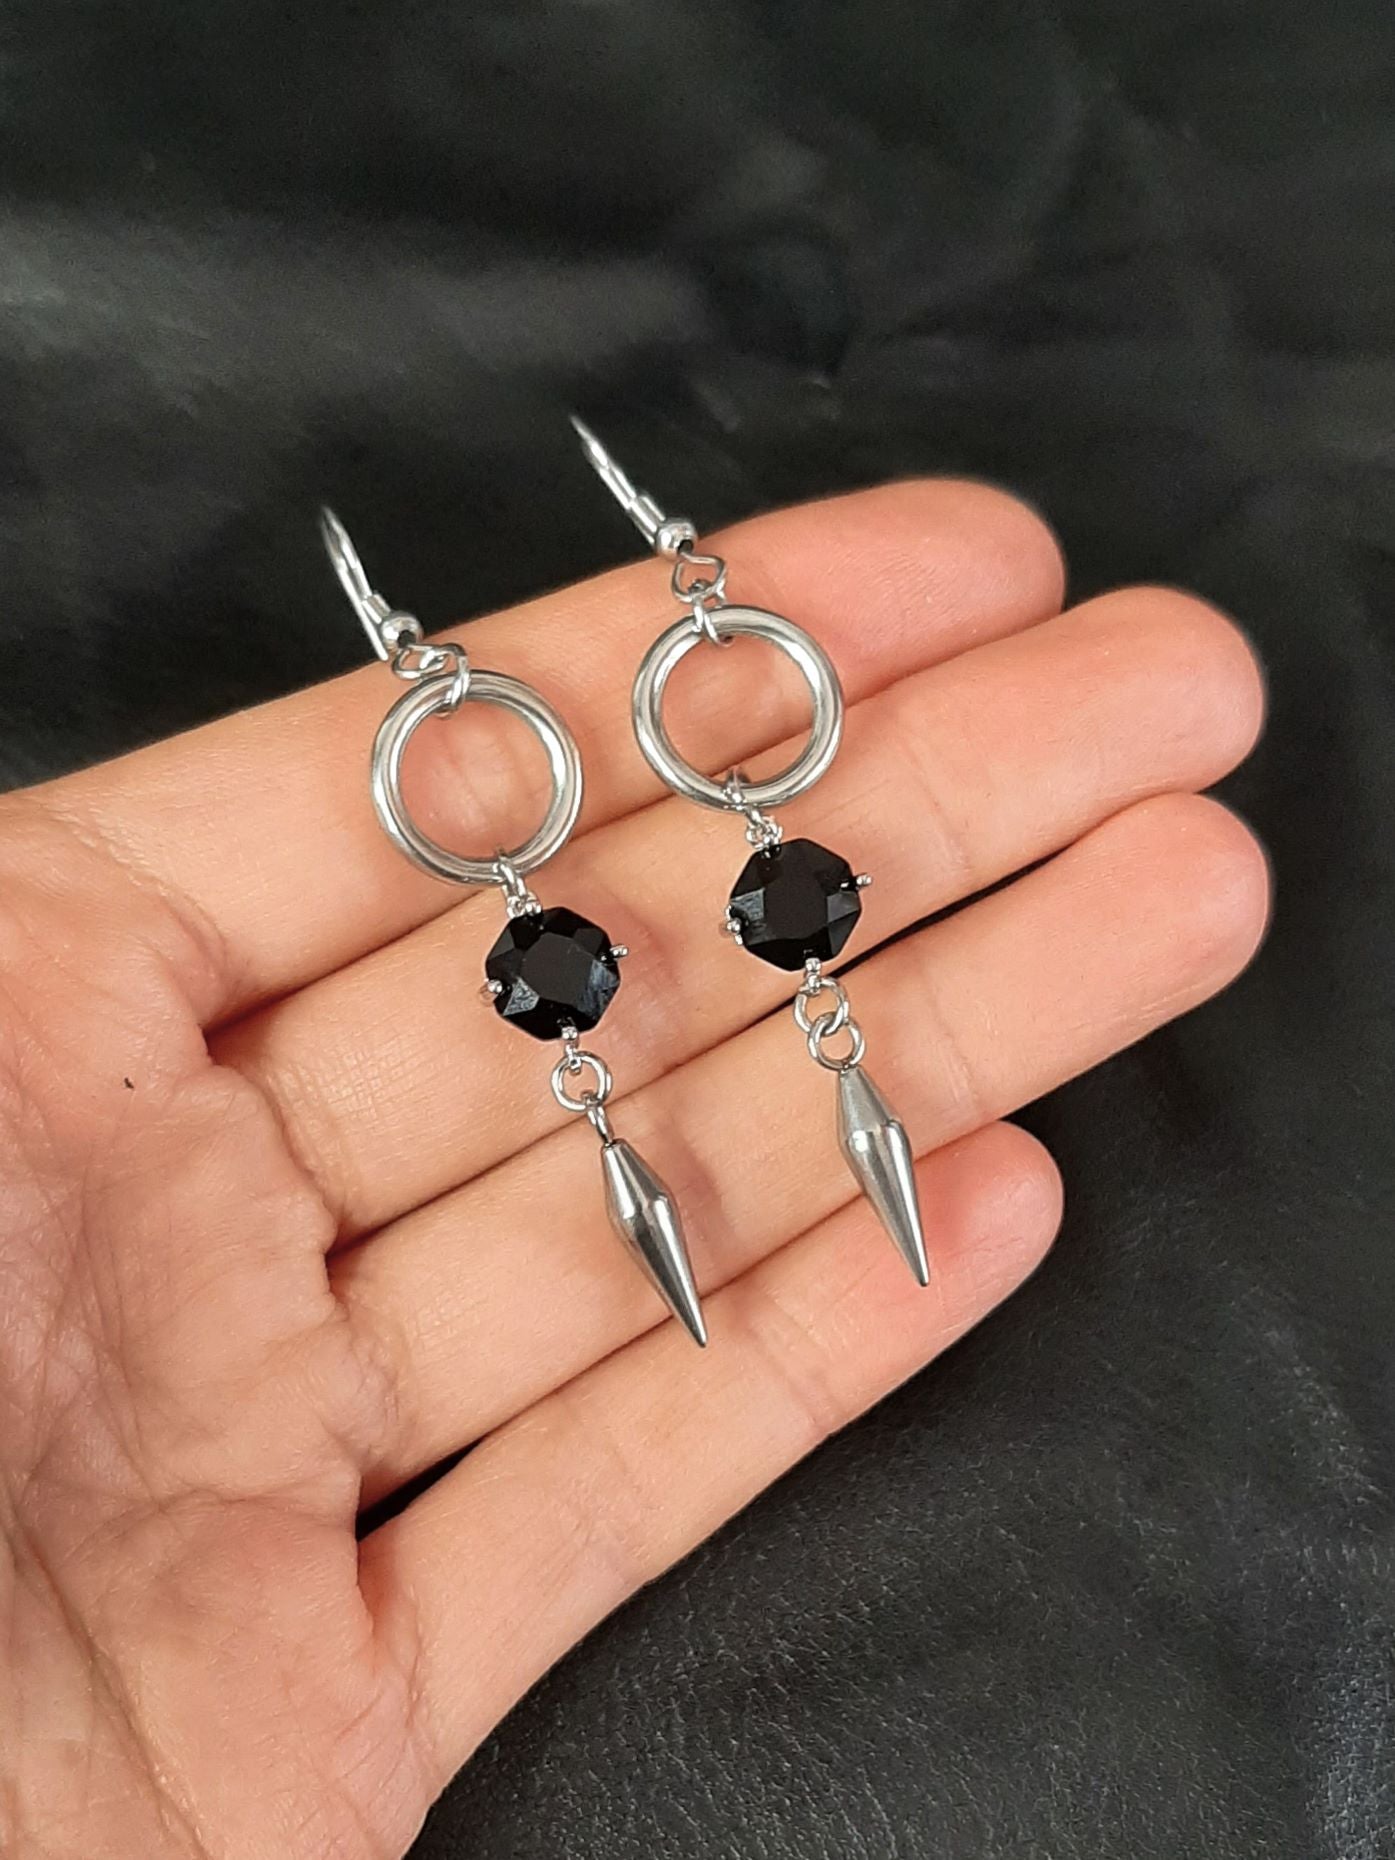 FORCE - O'ring spike earrings